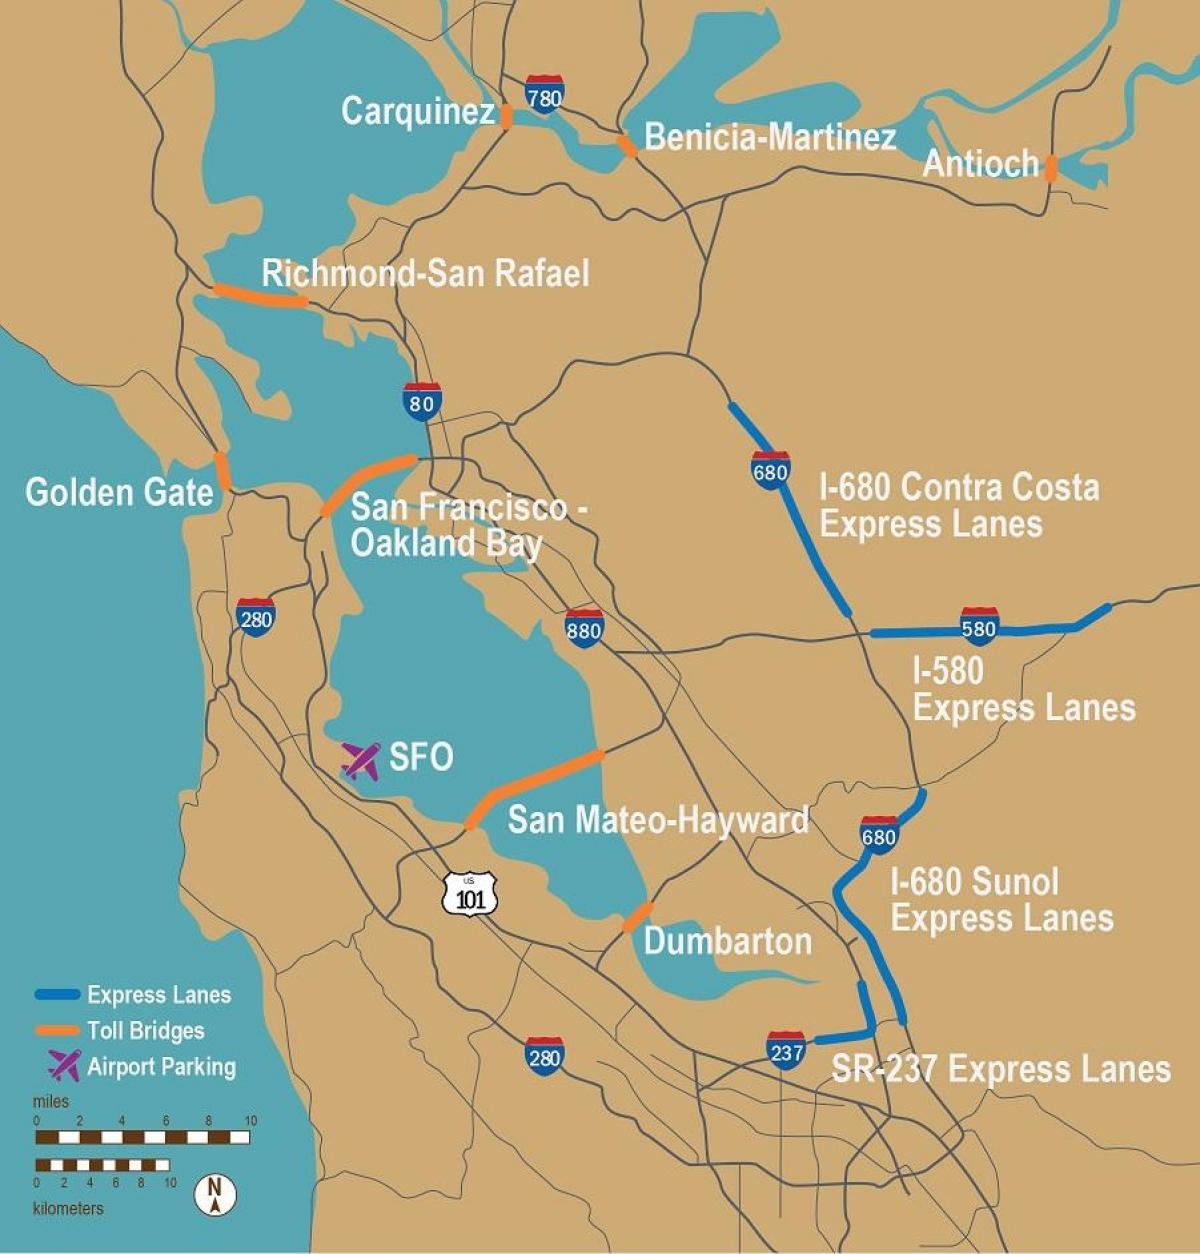 las carreteras de peaje de San Francisco mapa